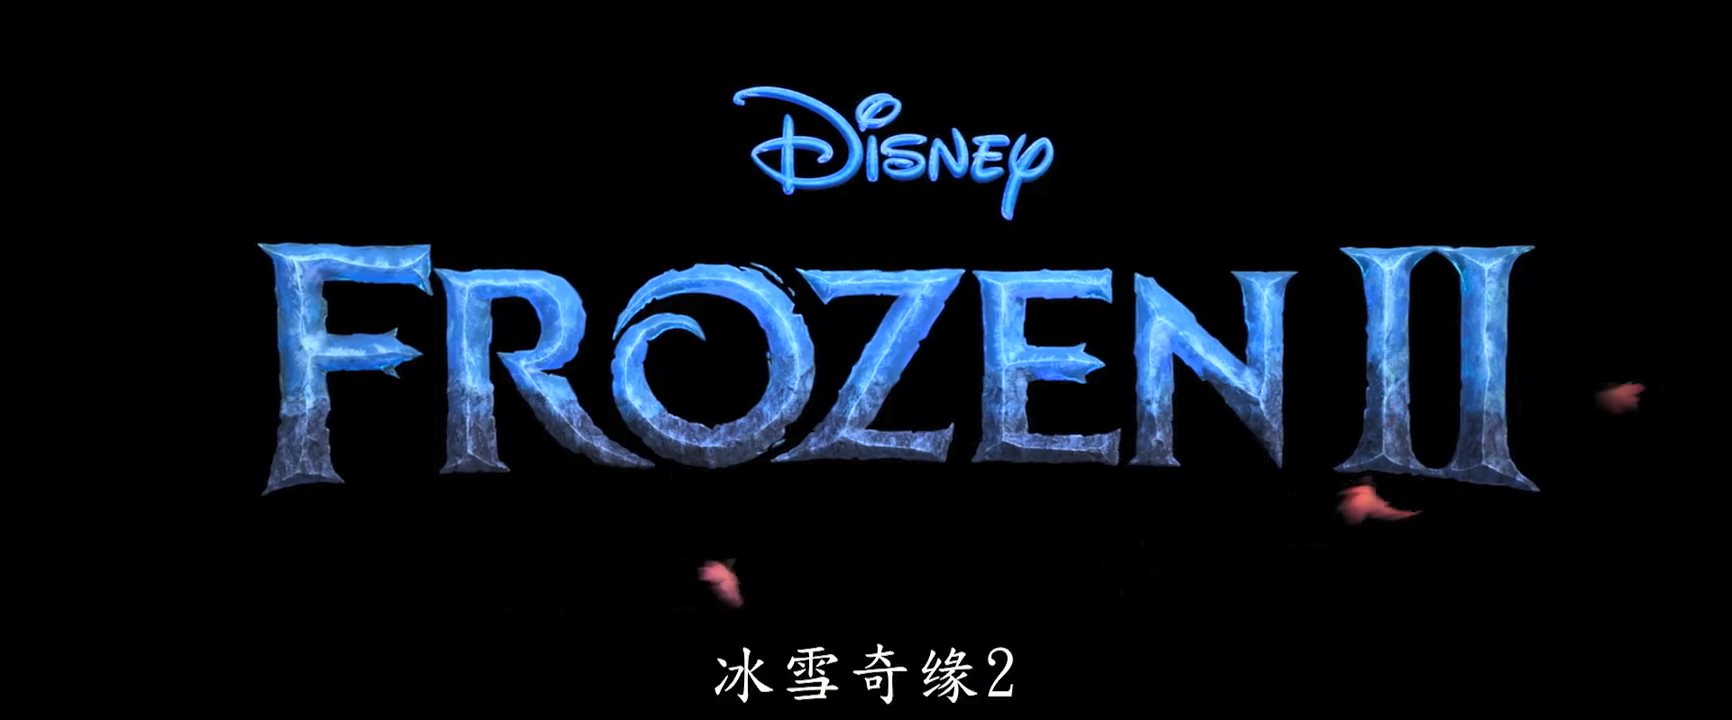 探寻魔力起源新冒险 《冰雪奇缘2》全球正式预告公开